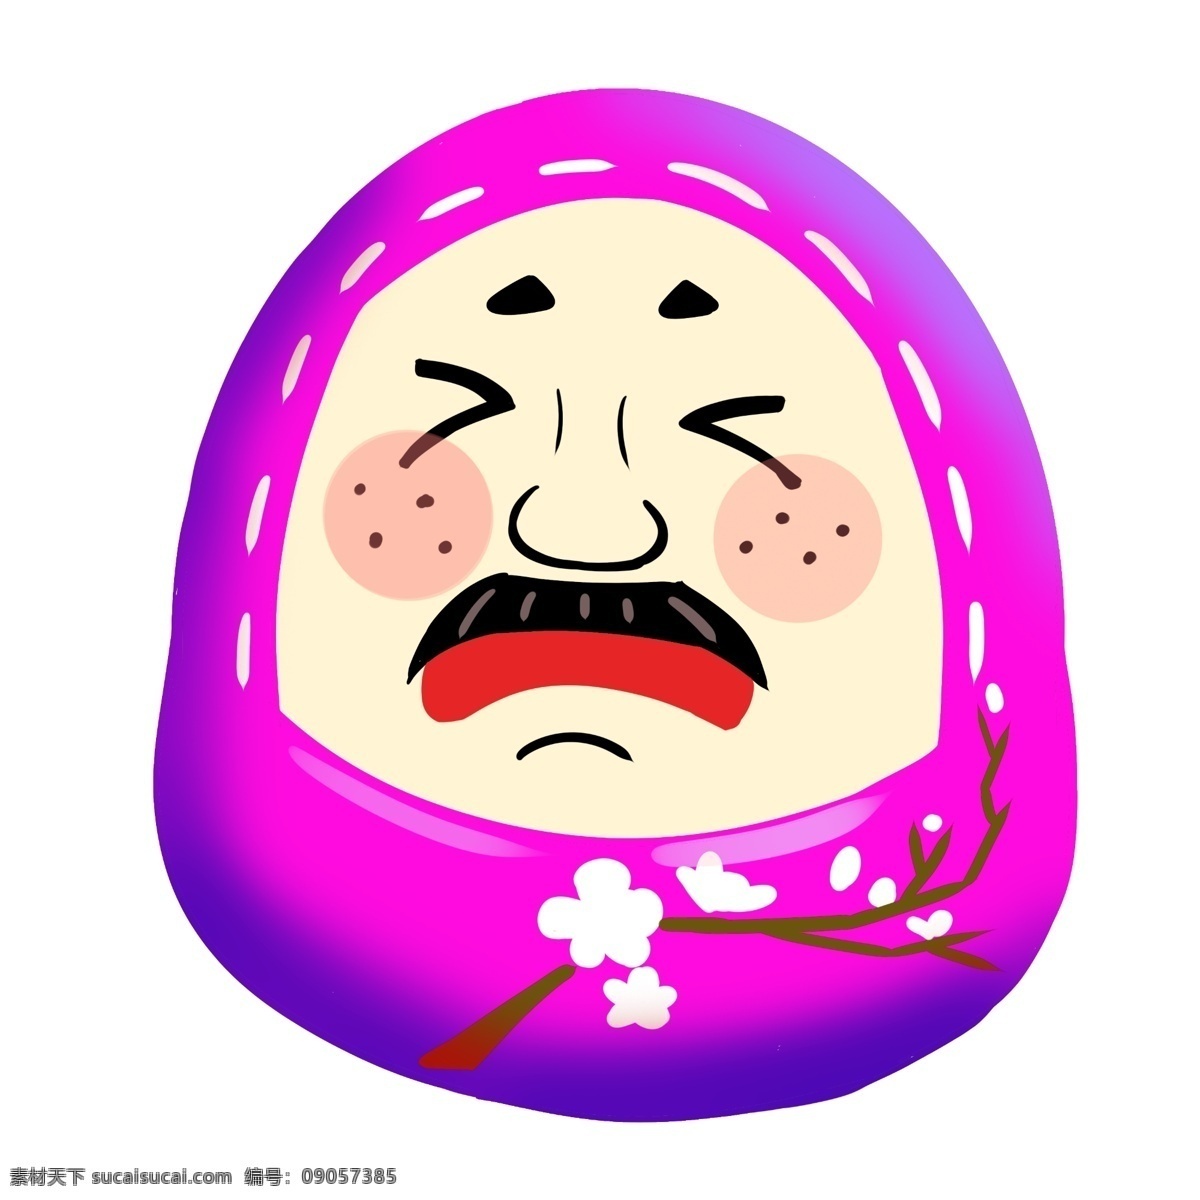 紫色 脸谱 日本 插画 紫色的脸谱 卡通插画 日本插画 日本脸谱 脸谱插画 日本玩具 漂亮的脸谱